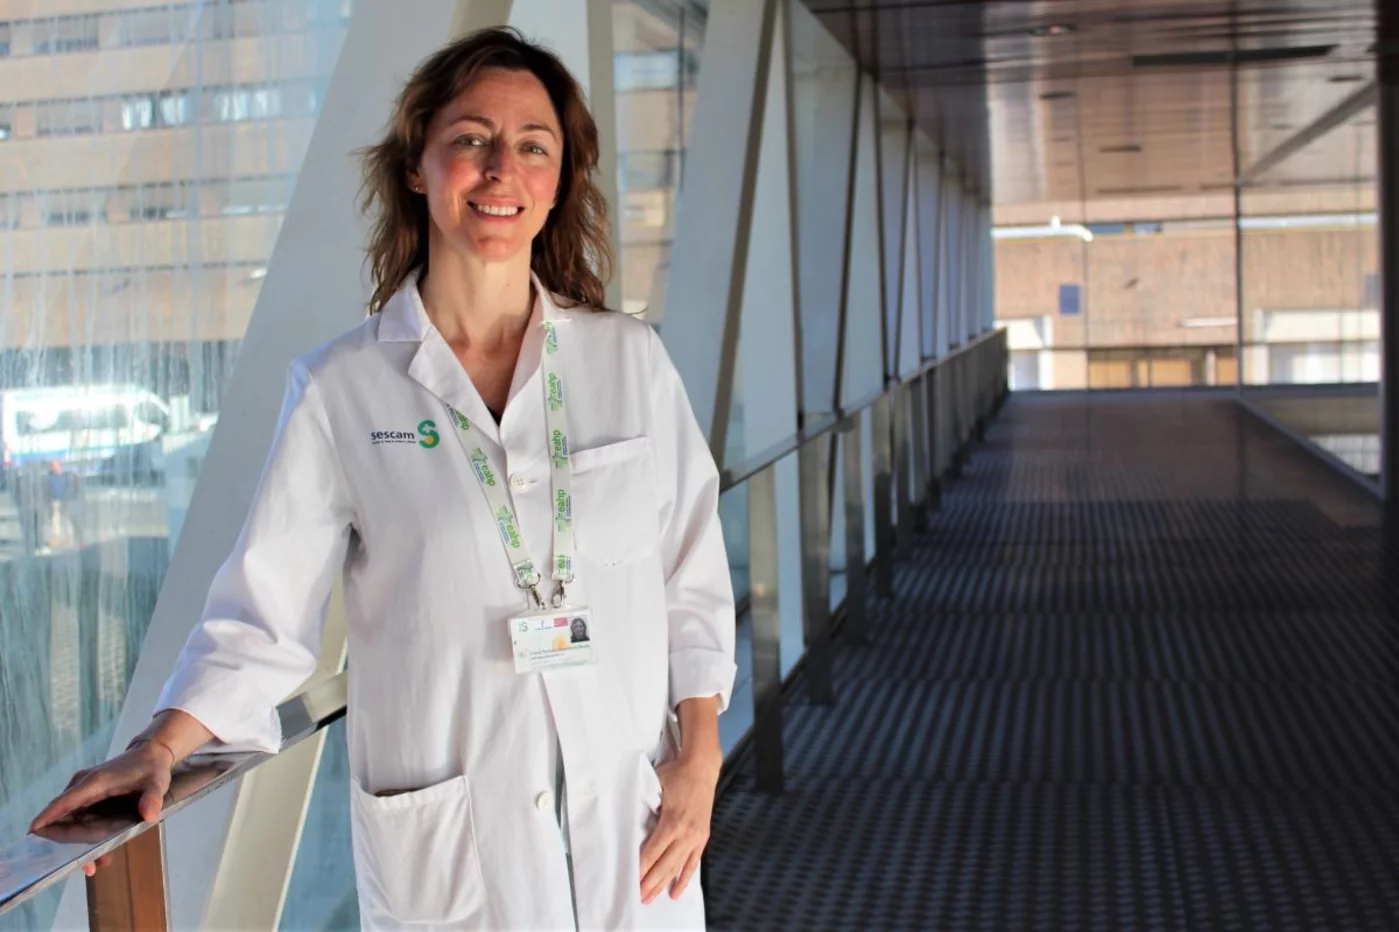 Ana Valladolid Walsh, que ha representado a España durante casi una década en el Comité Científico del congreso de la EAHP, es jefa del Servicio de Farmacia del Complejo Hospitalario Universitario de Albacete.